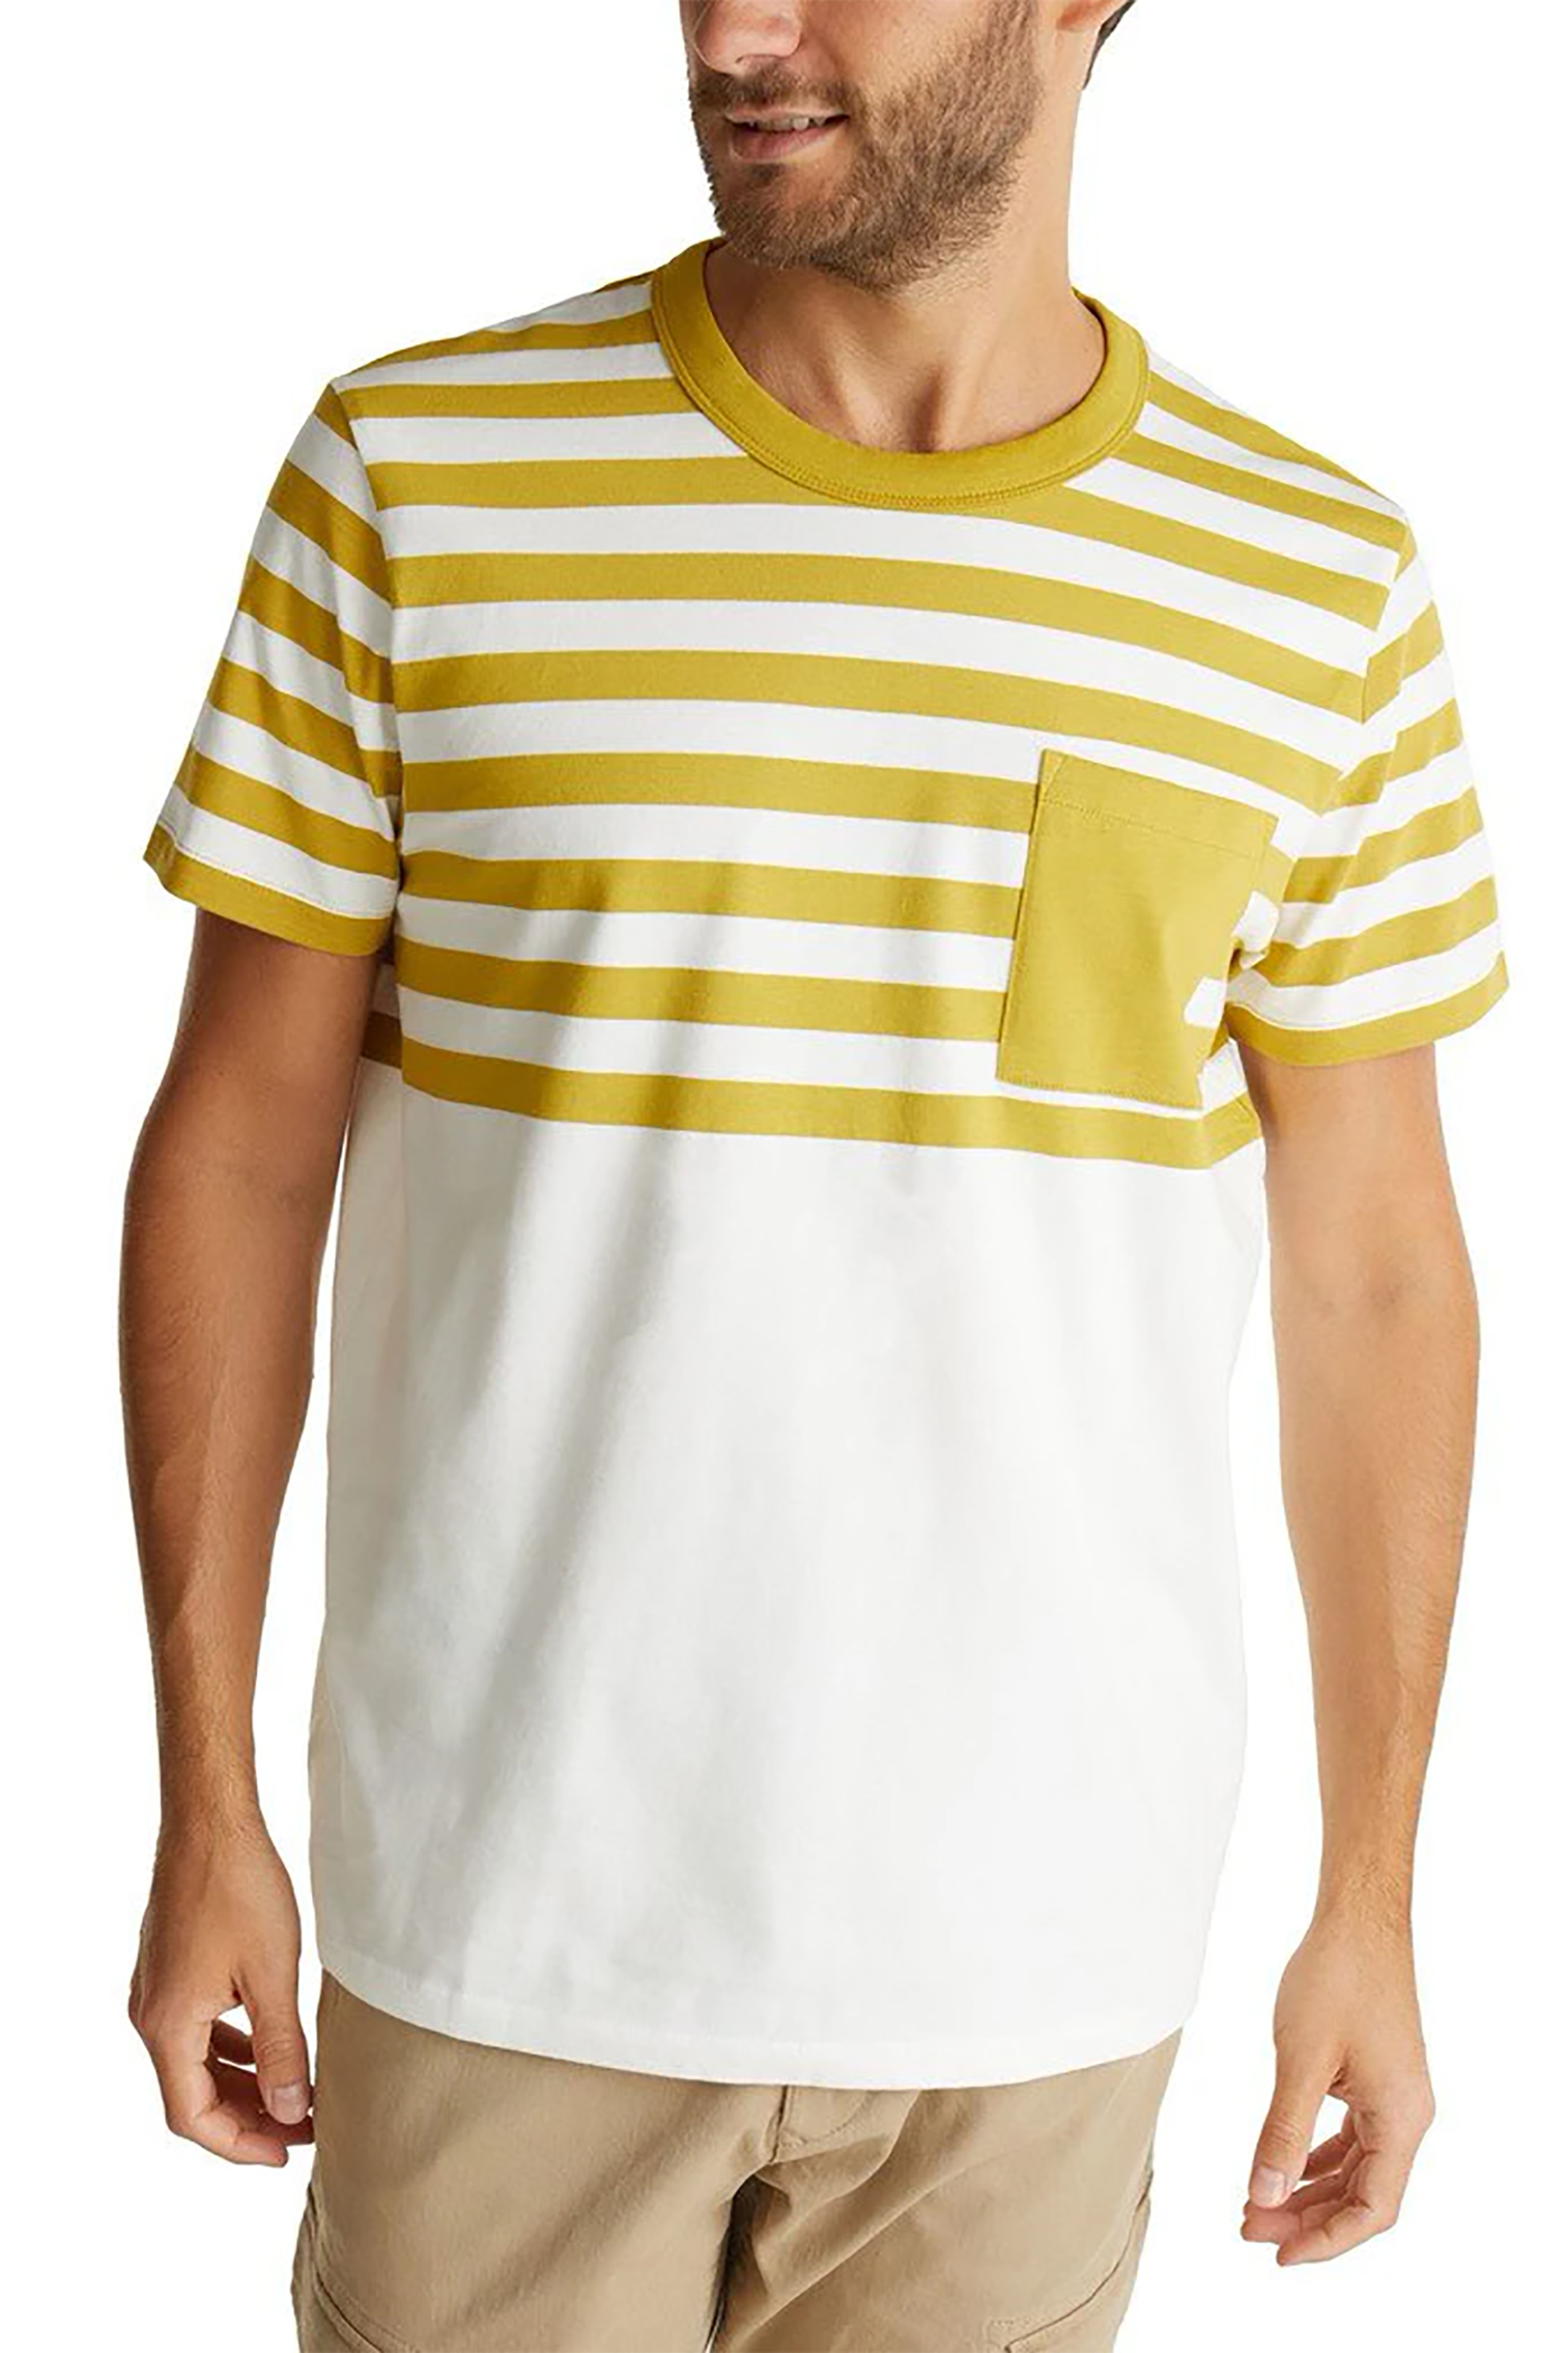 Ανδρική Μόδα > Ανδρικά Ρούχα > Ανδρικές Μπλούζες > Ανδρικά T-Shirts Esprit ανδρικό T-Shirt με ριγέ σχέδιο - 070EE2K313 Κίτρινο